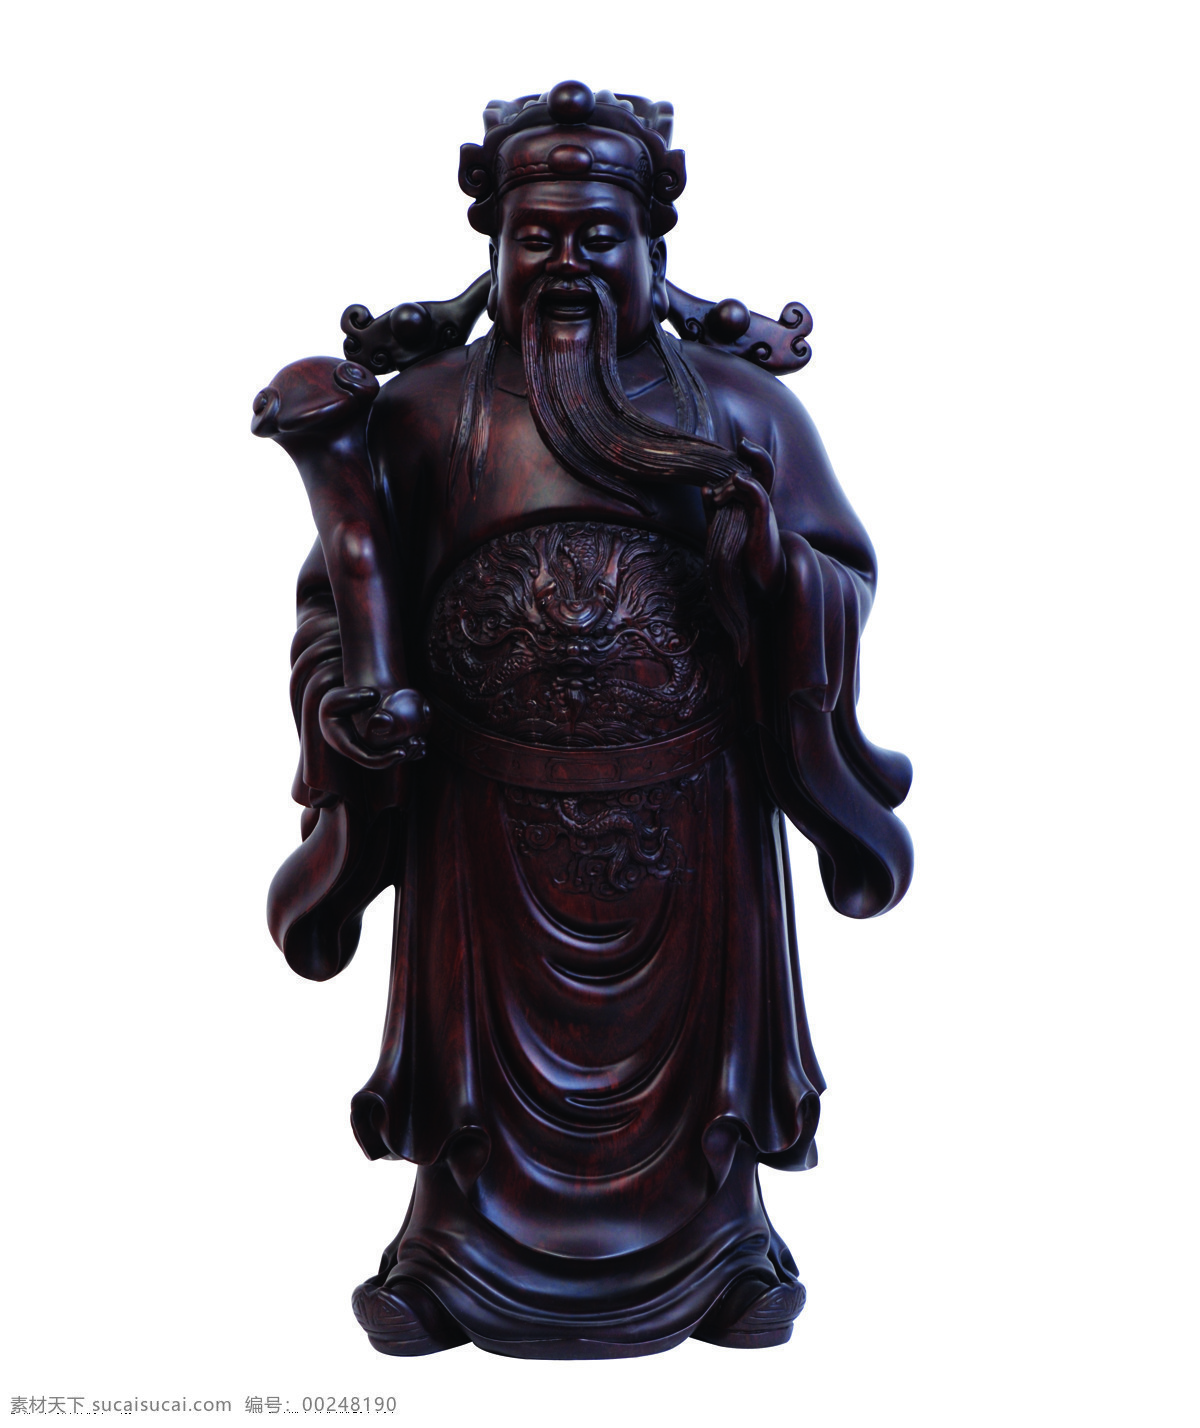 福禄寿 工艺品 黑檀木 雕刻 木雕 手工制作 传统文化 文化艺术